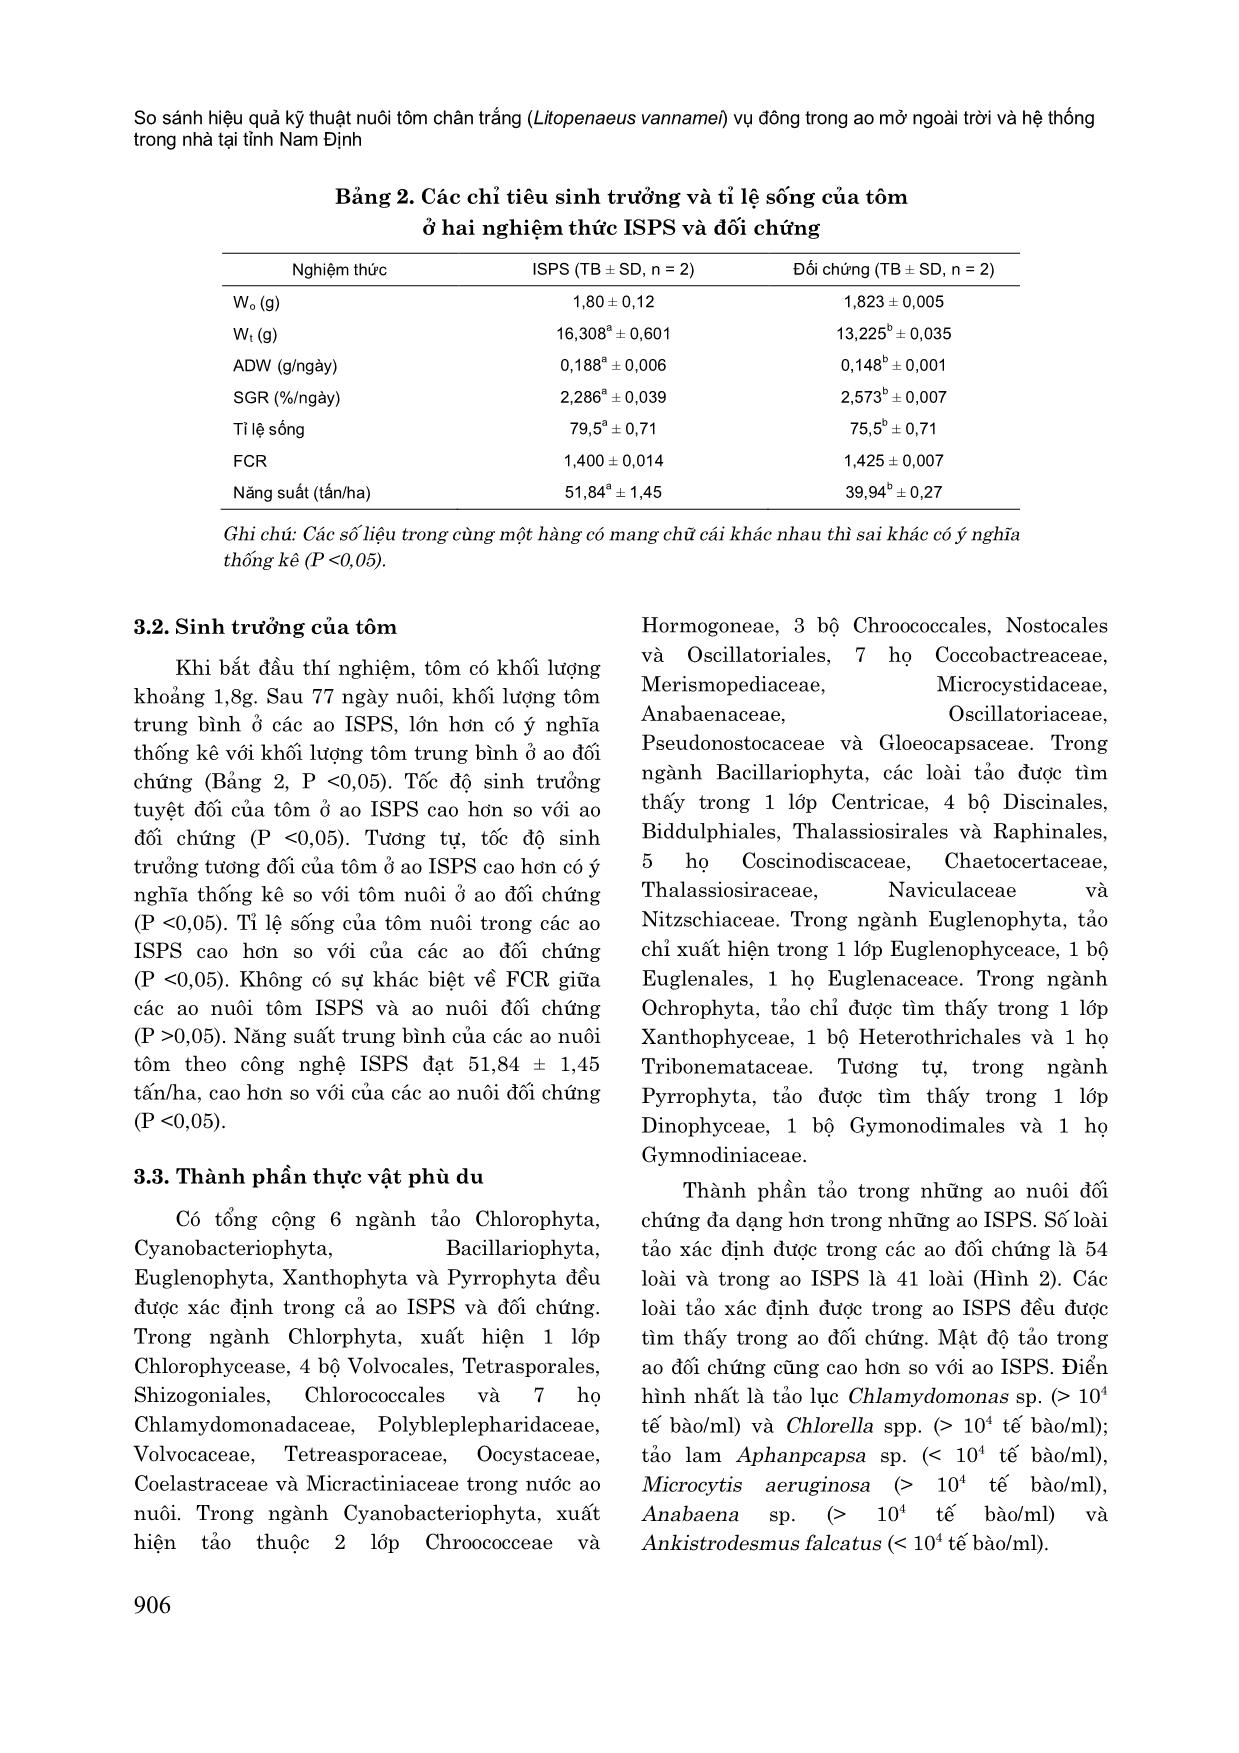 So sánh hiệu quả kỹ thuật nuôi tôm chân trắng (litopenaeus vannamei) vụ đông trong ao mở ngoài trời và hệ thống trong nhà tại tỉnh Nam Định trang 6